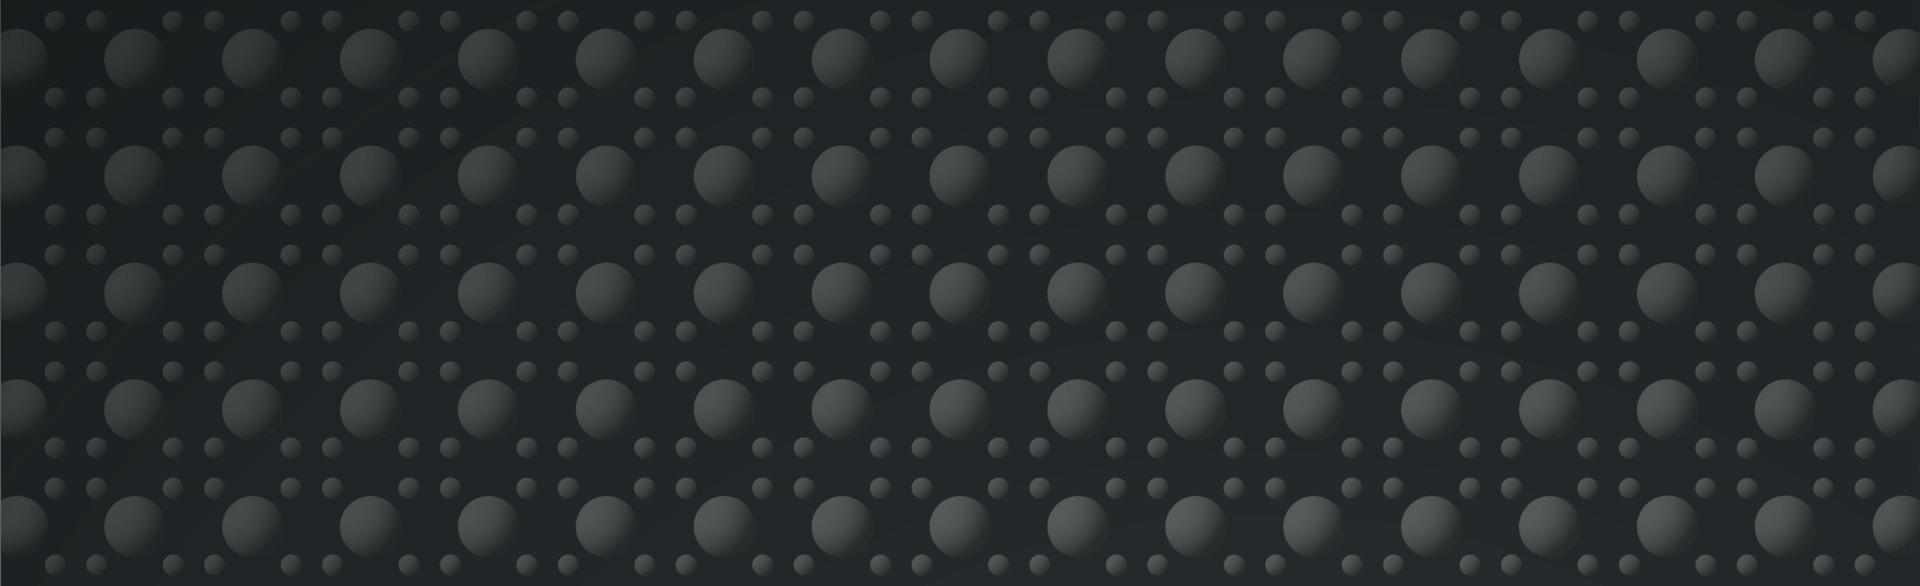 abstrakter dunkler Hintergrund - graue volumetrische Formen - Vektor